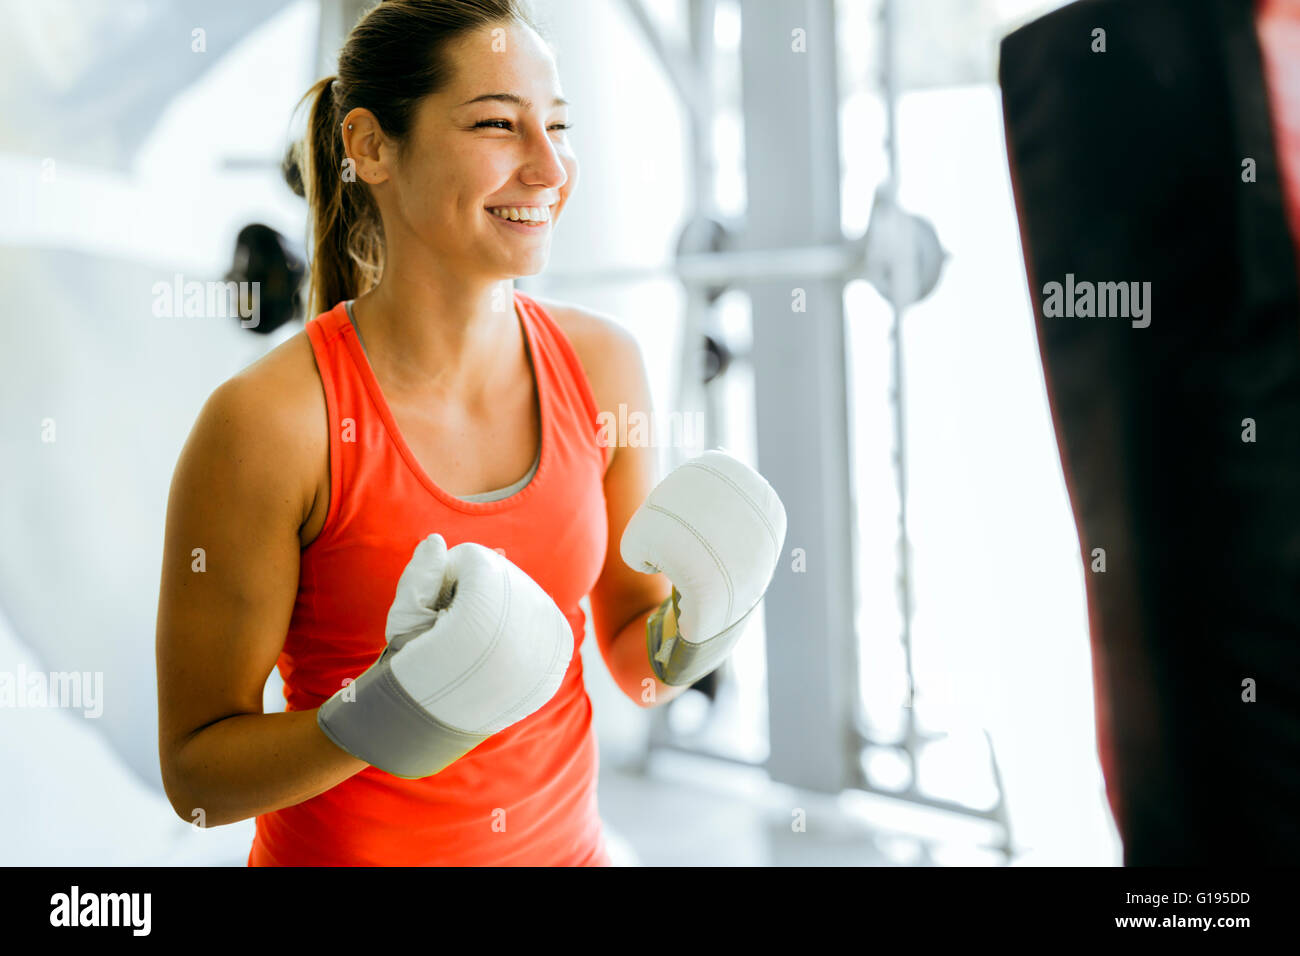 Junge Frau Boxen und training in einem Fitnessstudio Stockfoto